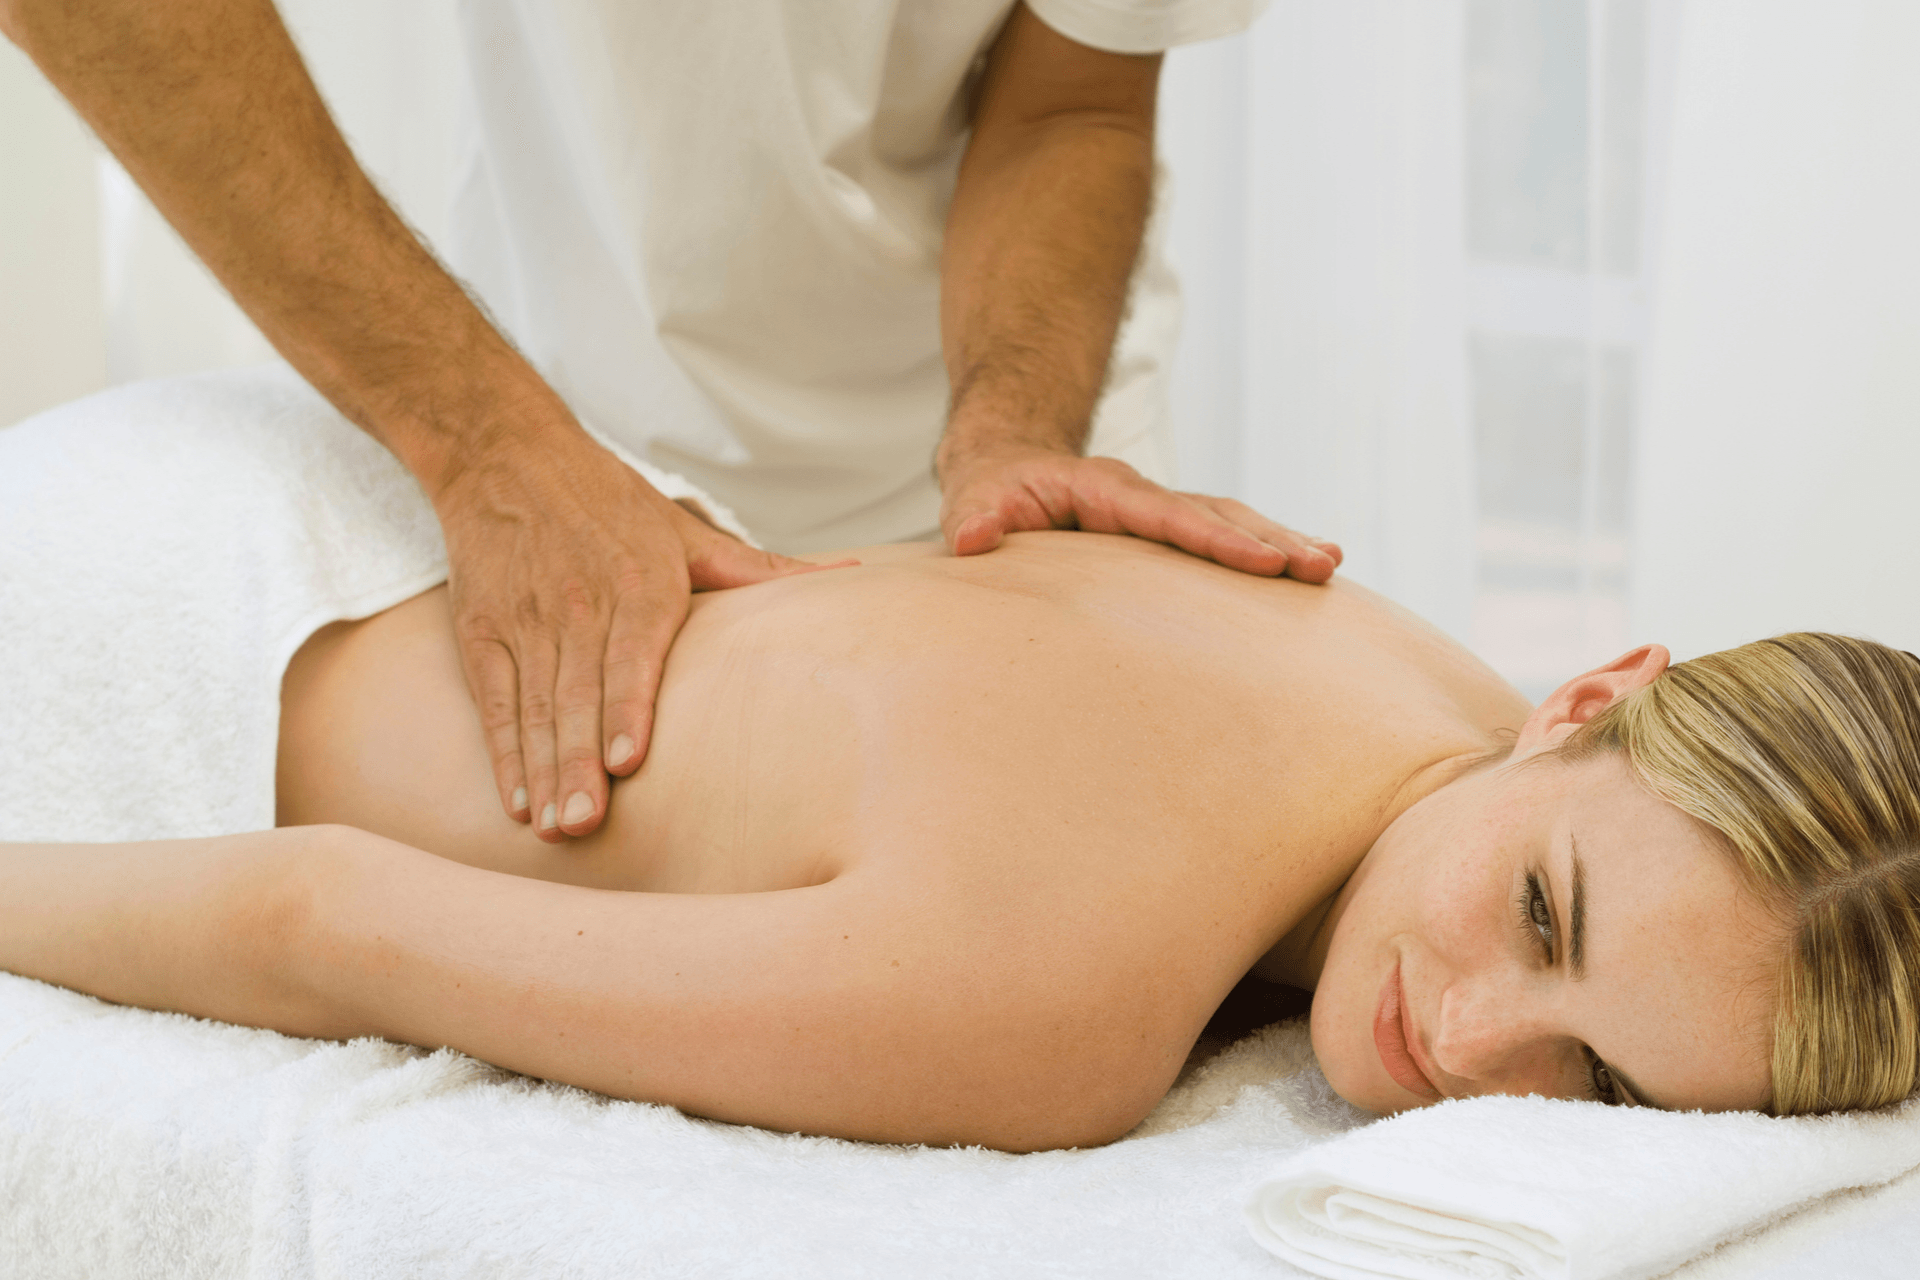 Woman receiving a sports massage